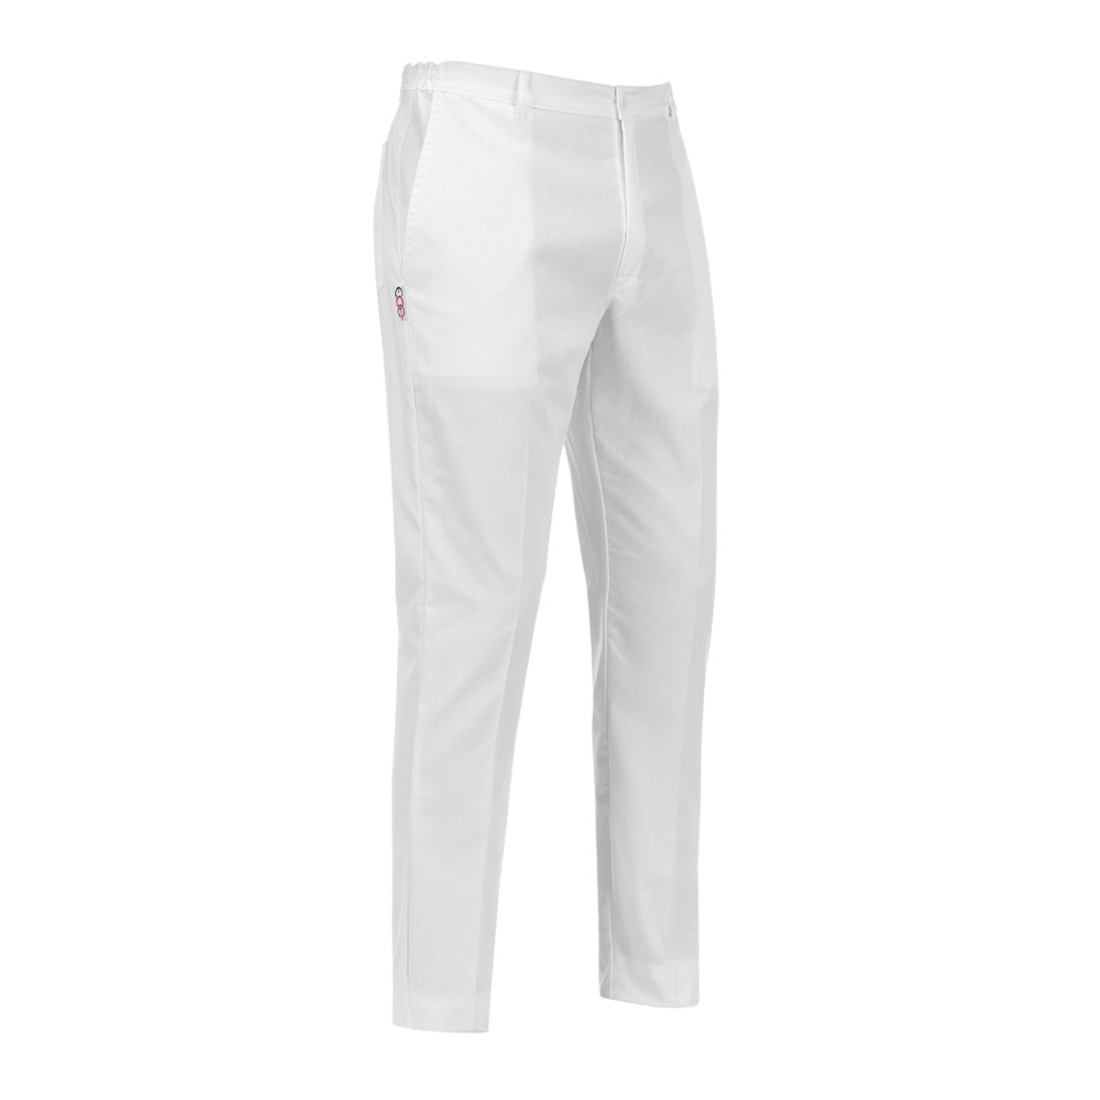 Pantalón Slim Fit - Ropa de protección